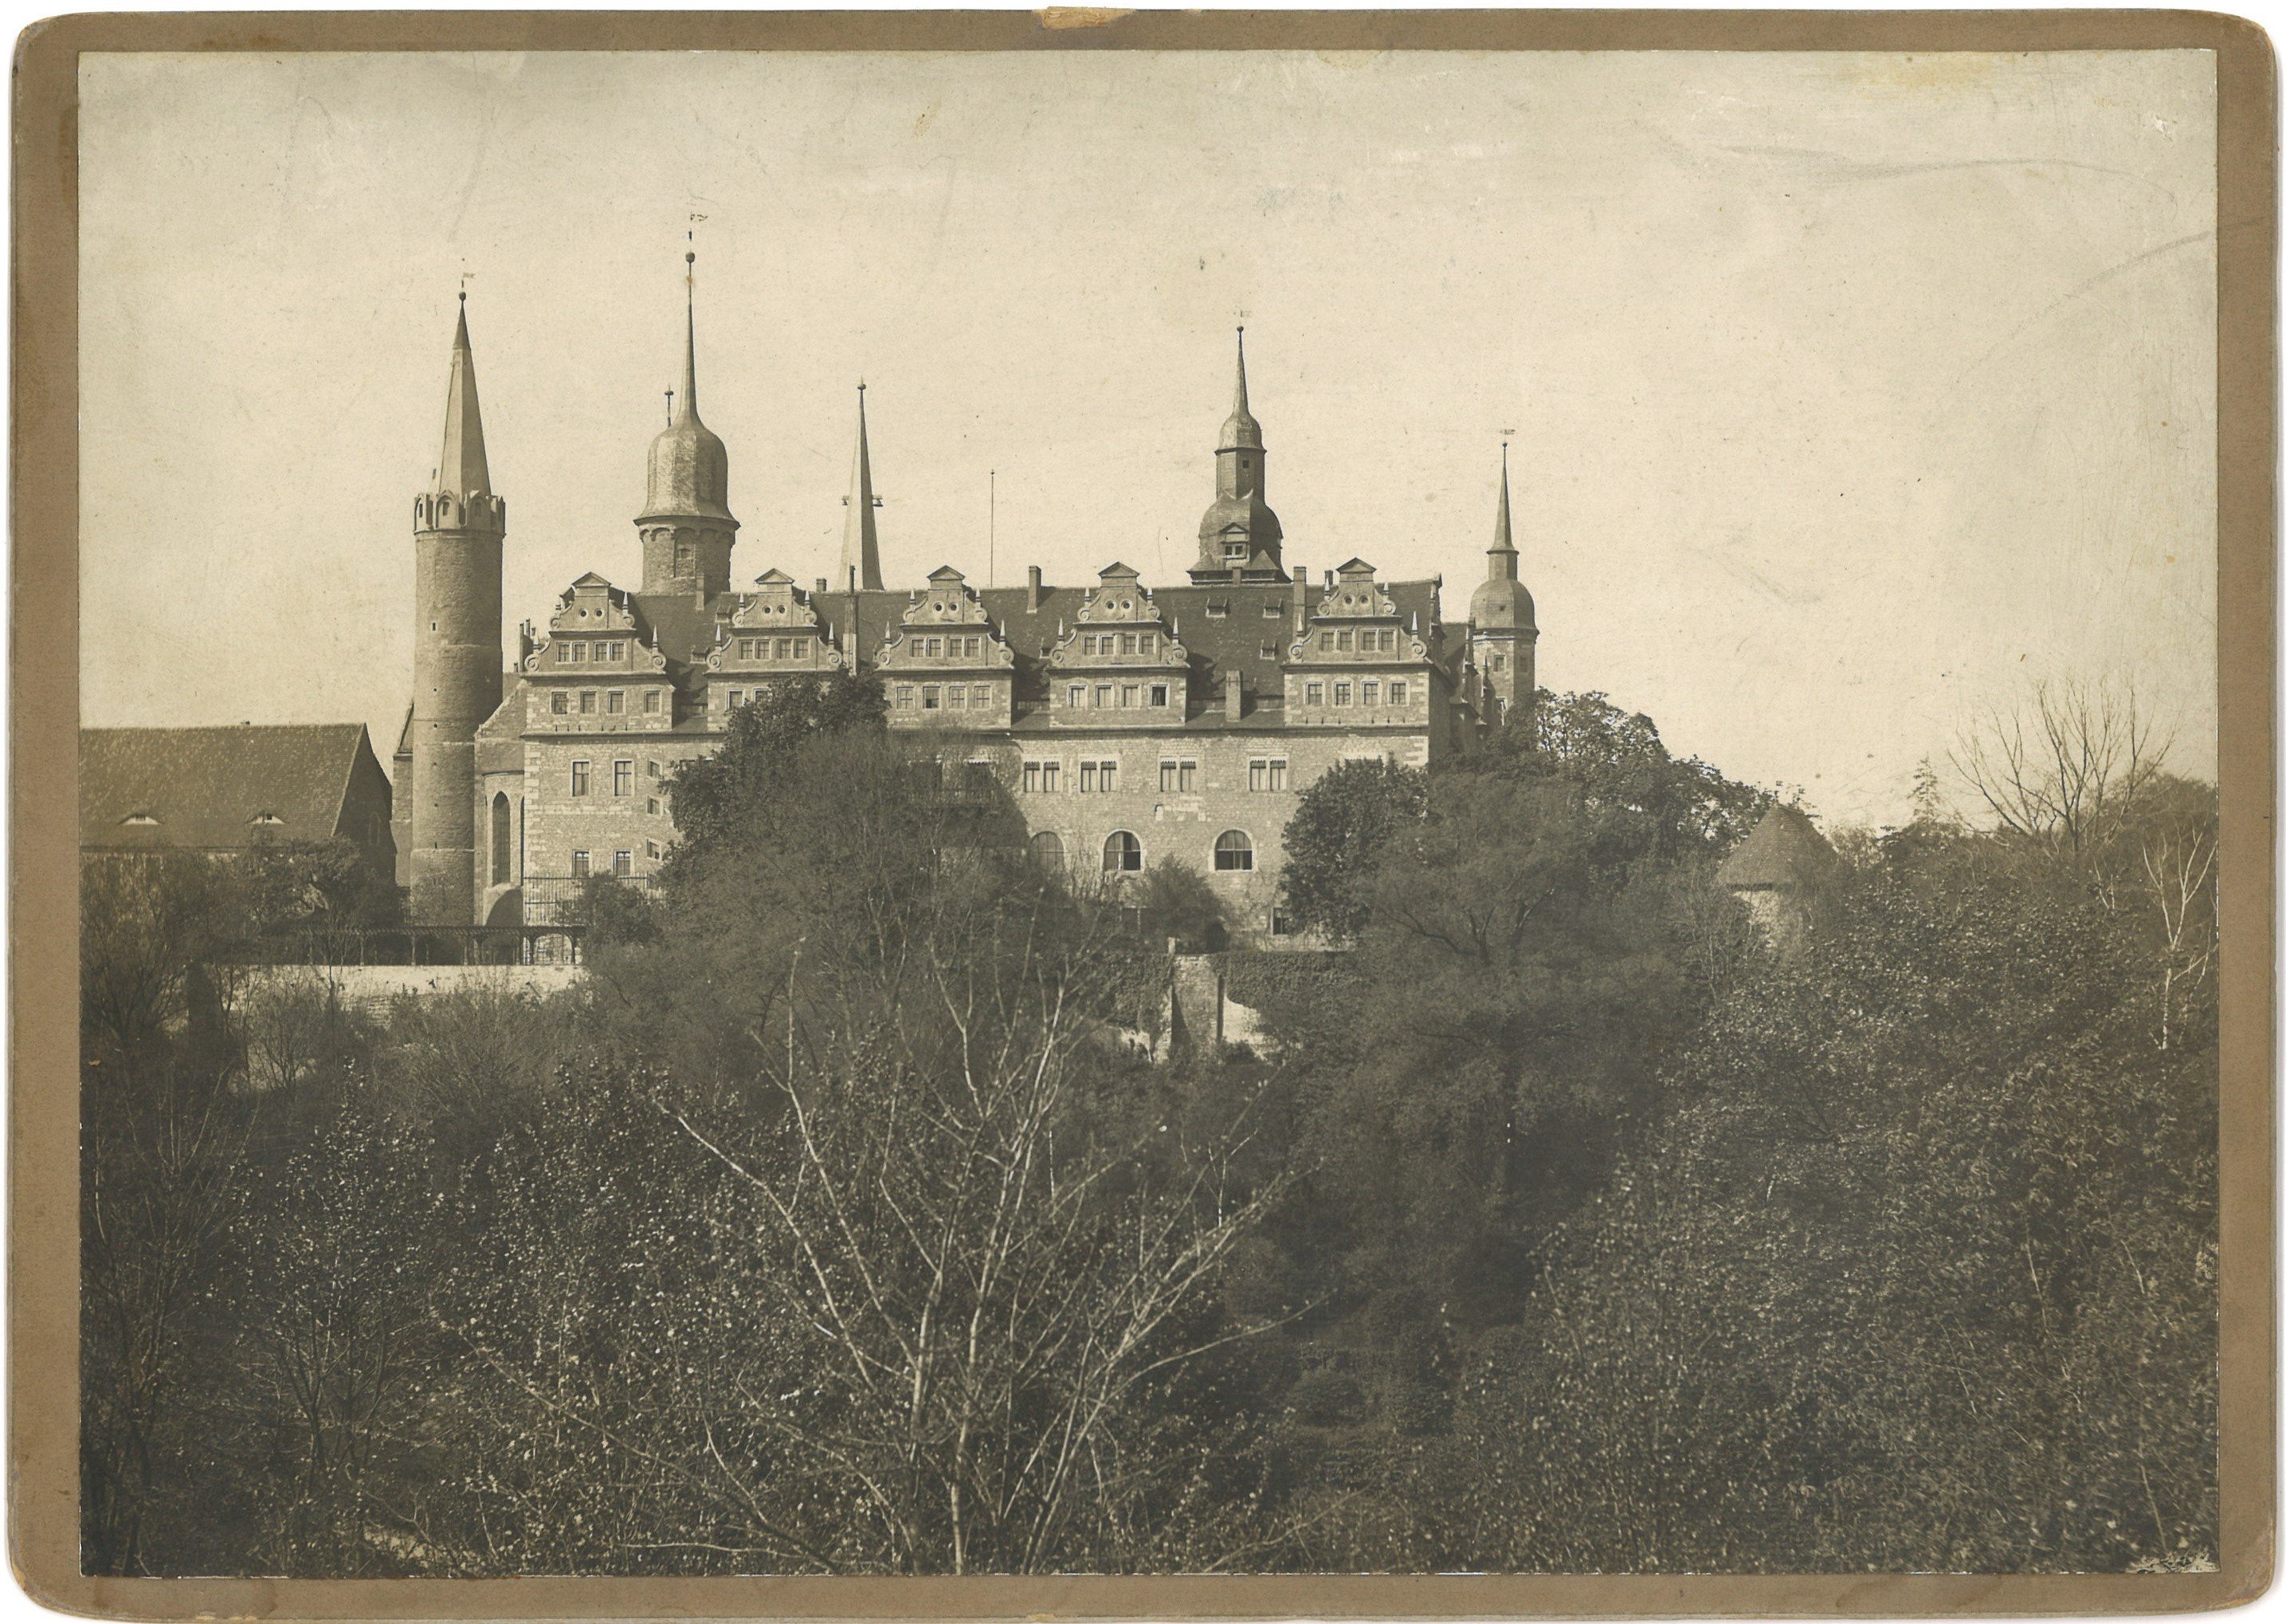 Merseburg: Schloss von Osten über die Saale (Landesgeschichtliche Vereinigung für die Mark Brandenburg e.V., Archiv CC BY)